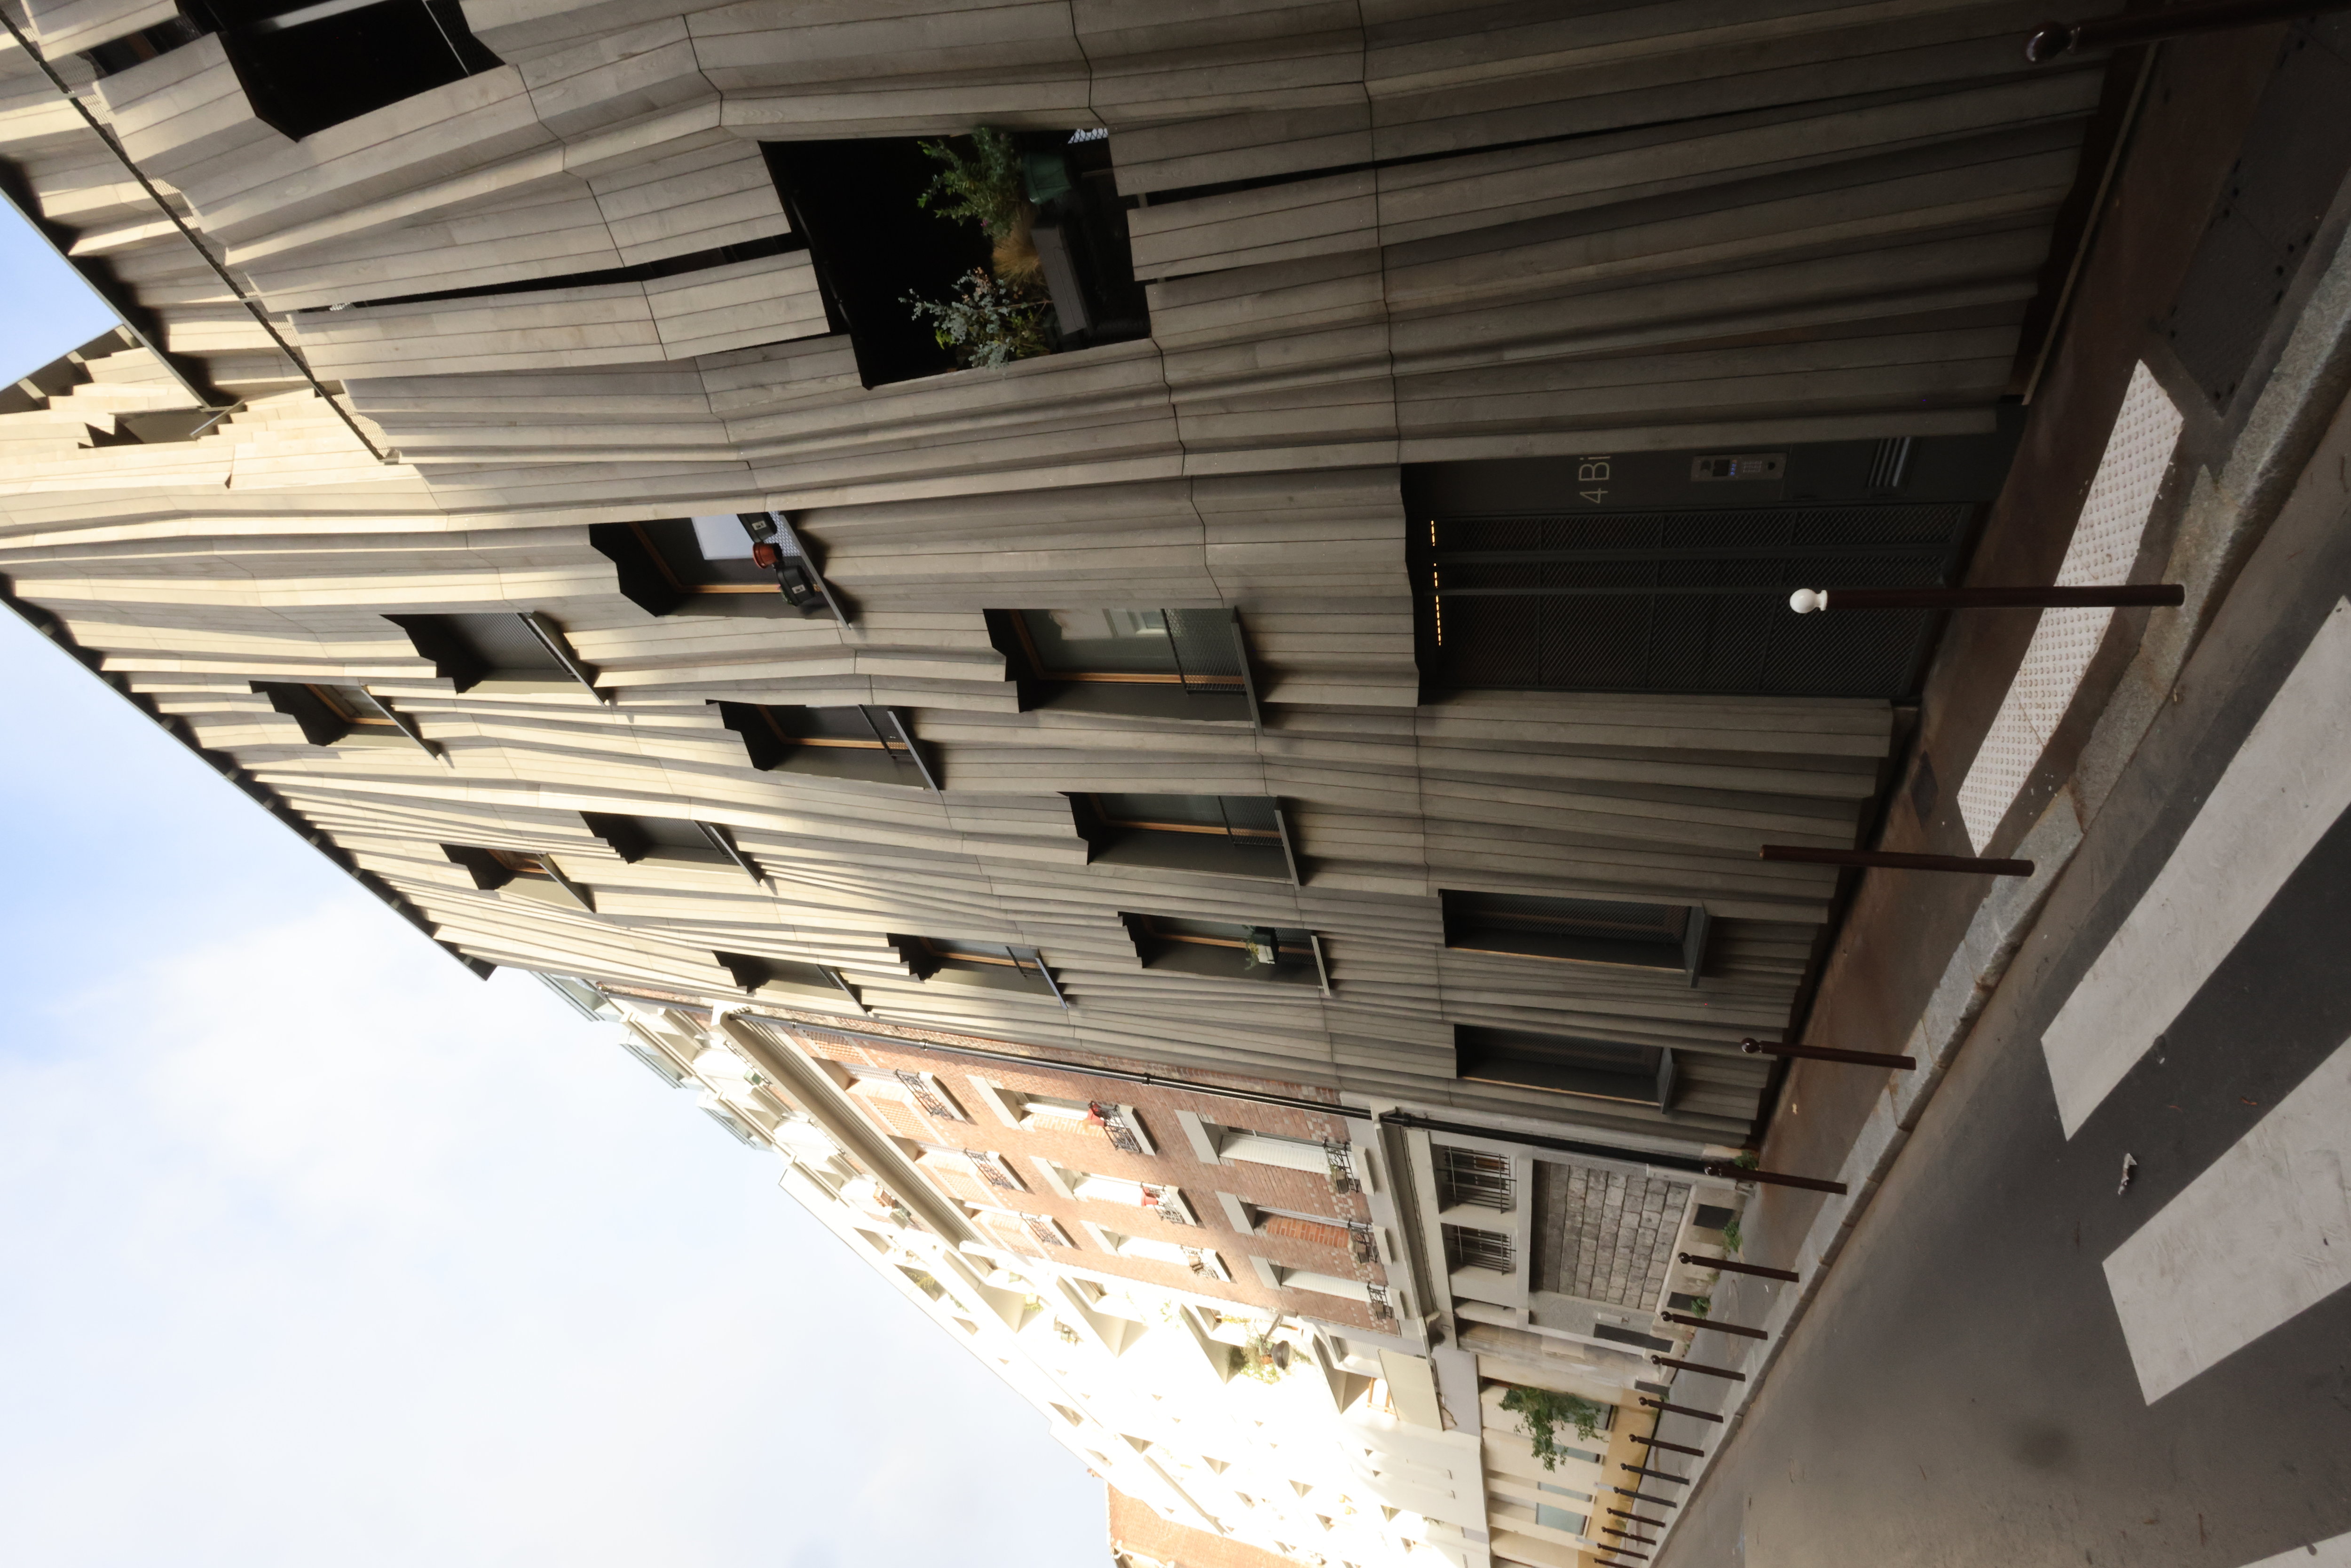 Paris, XIXe arrondissement. La façade est composée de lattes construites sur-mesure et montées selon des angles différents pour laisser pénétrer l’ombre ou la lumière selon l’heure. LP/Olivier Lejeune